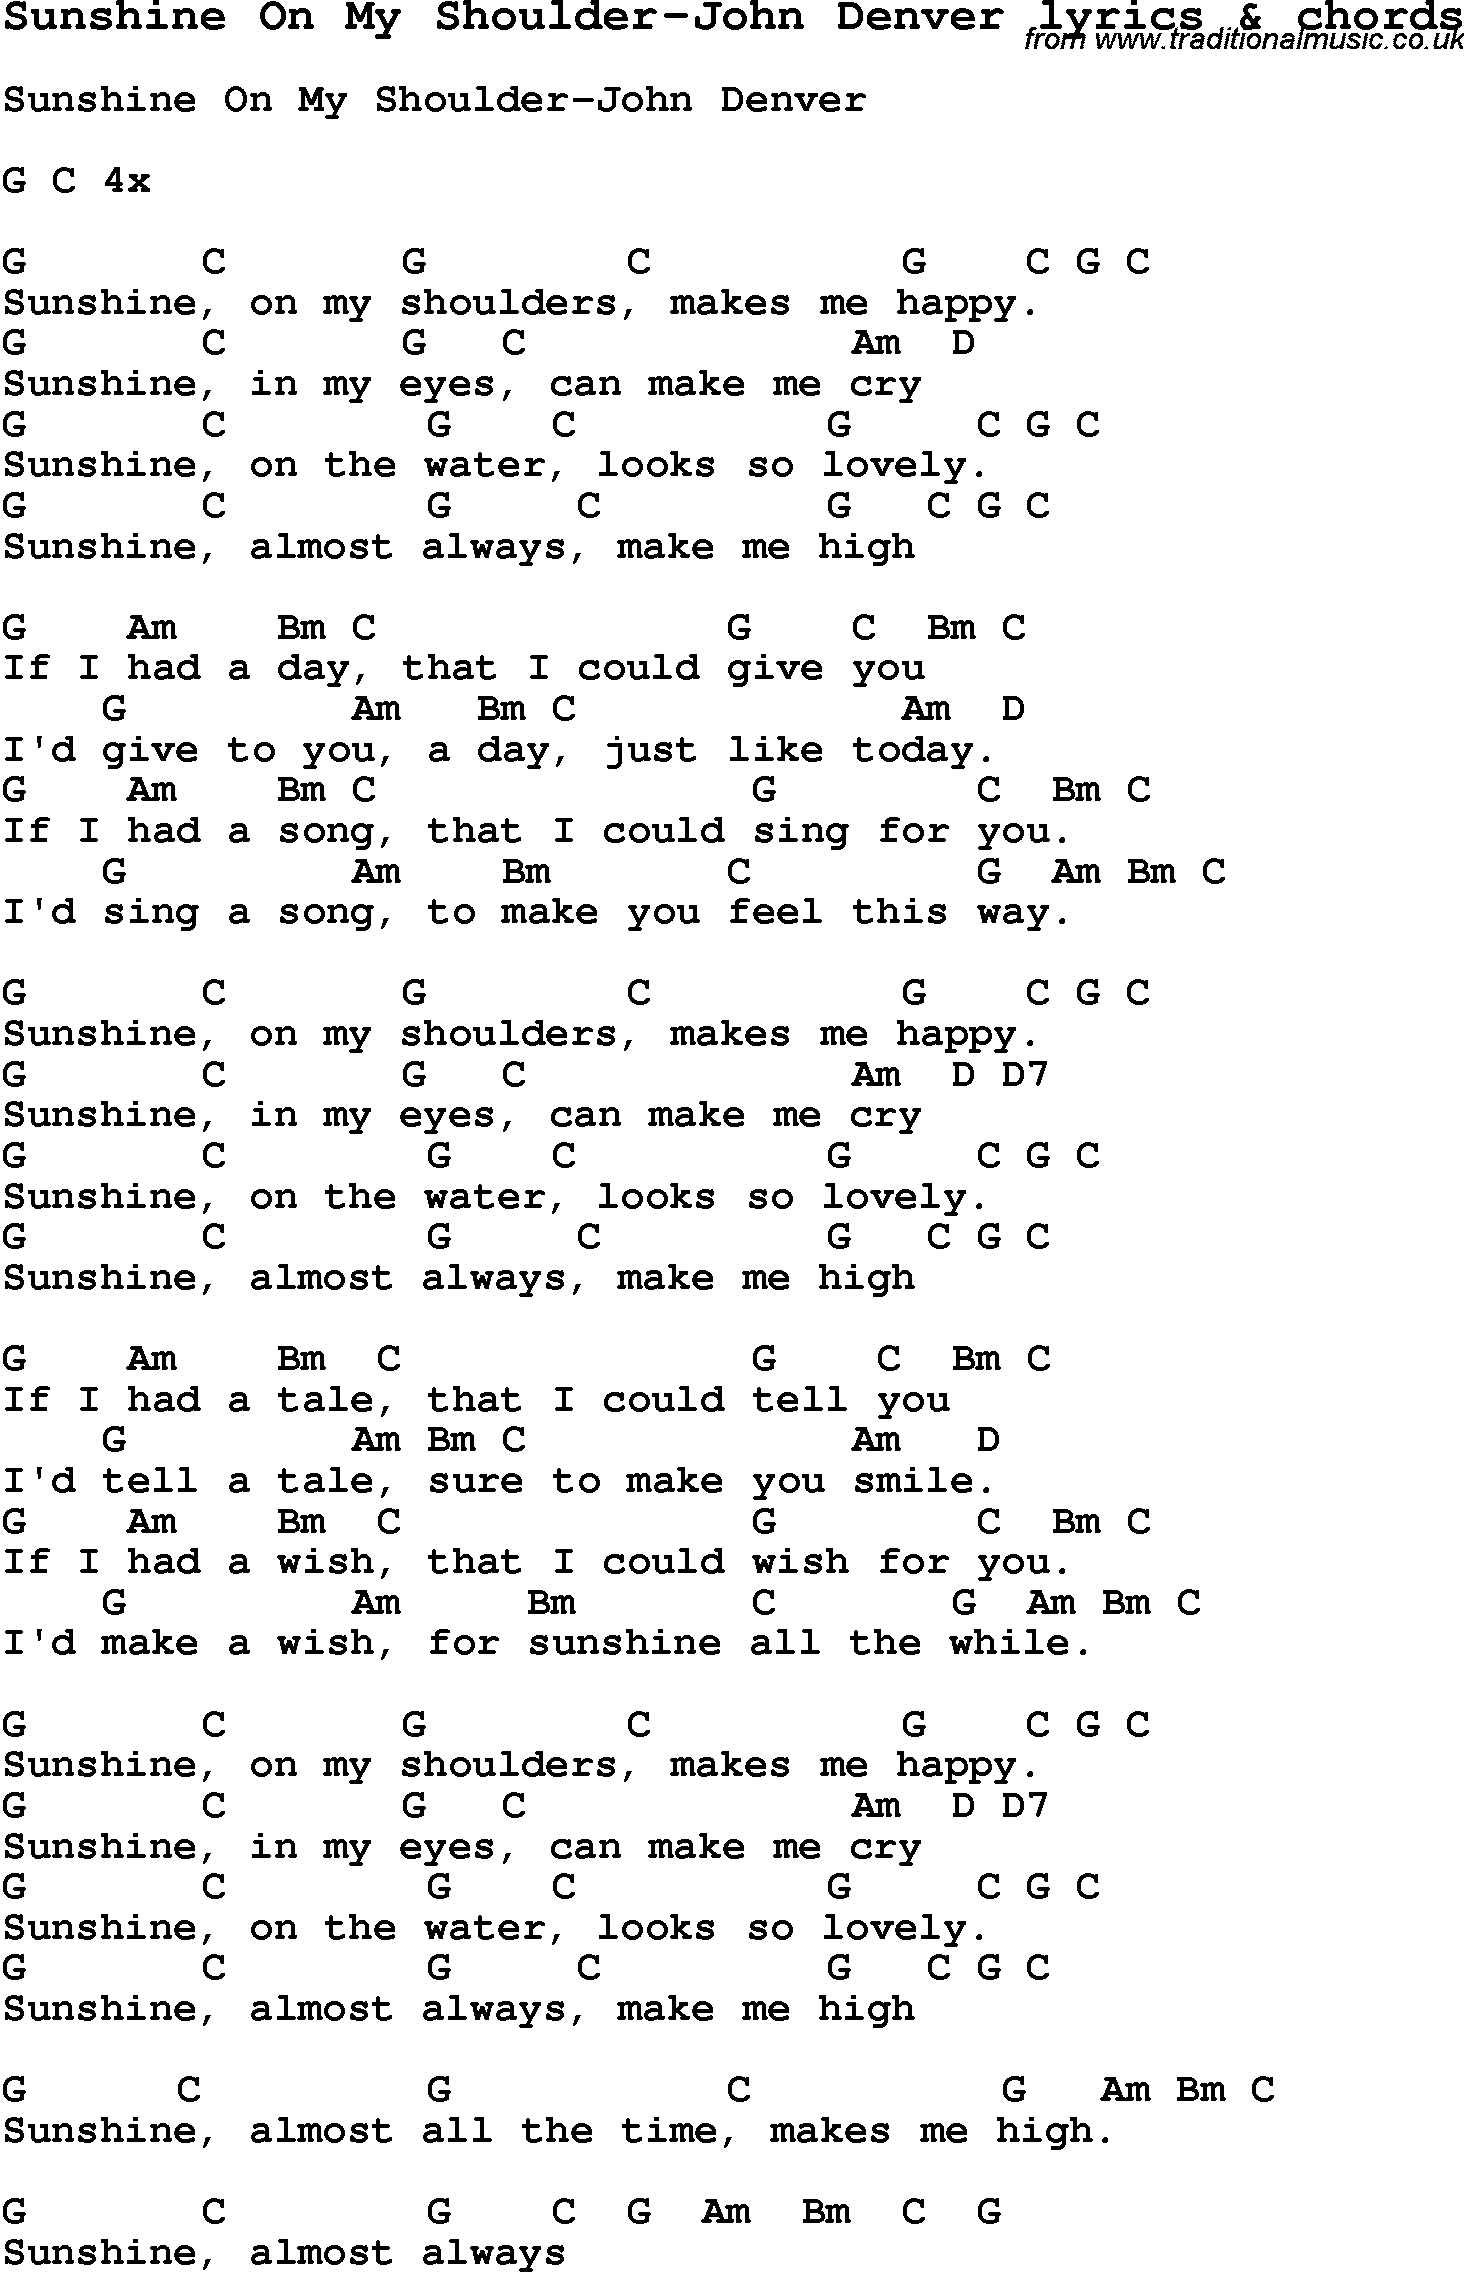 Love Song Lyrics for: Sunshine On My Shoulder-John Denver with chords for Ukulele, Guitar Banjo etc.